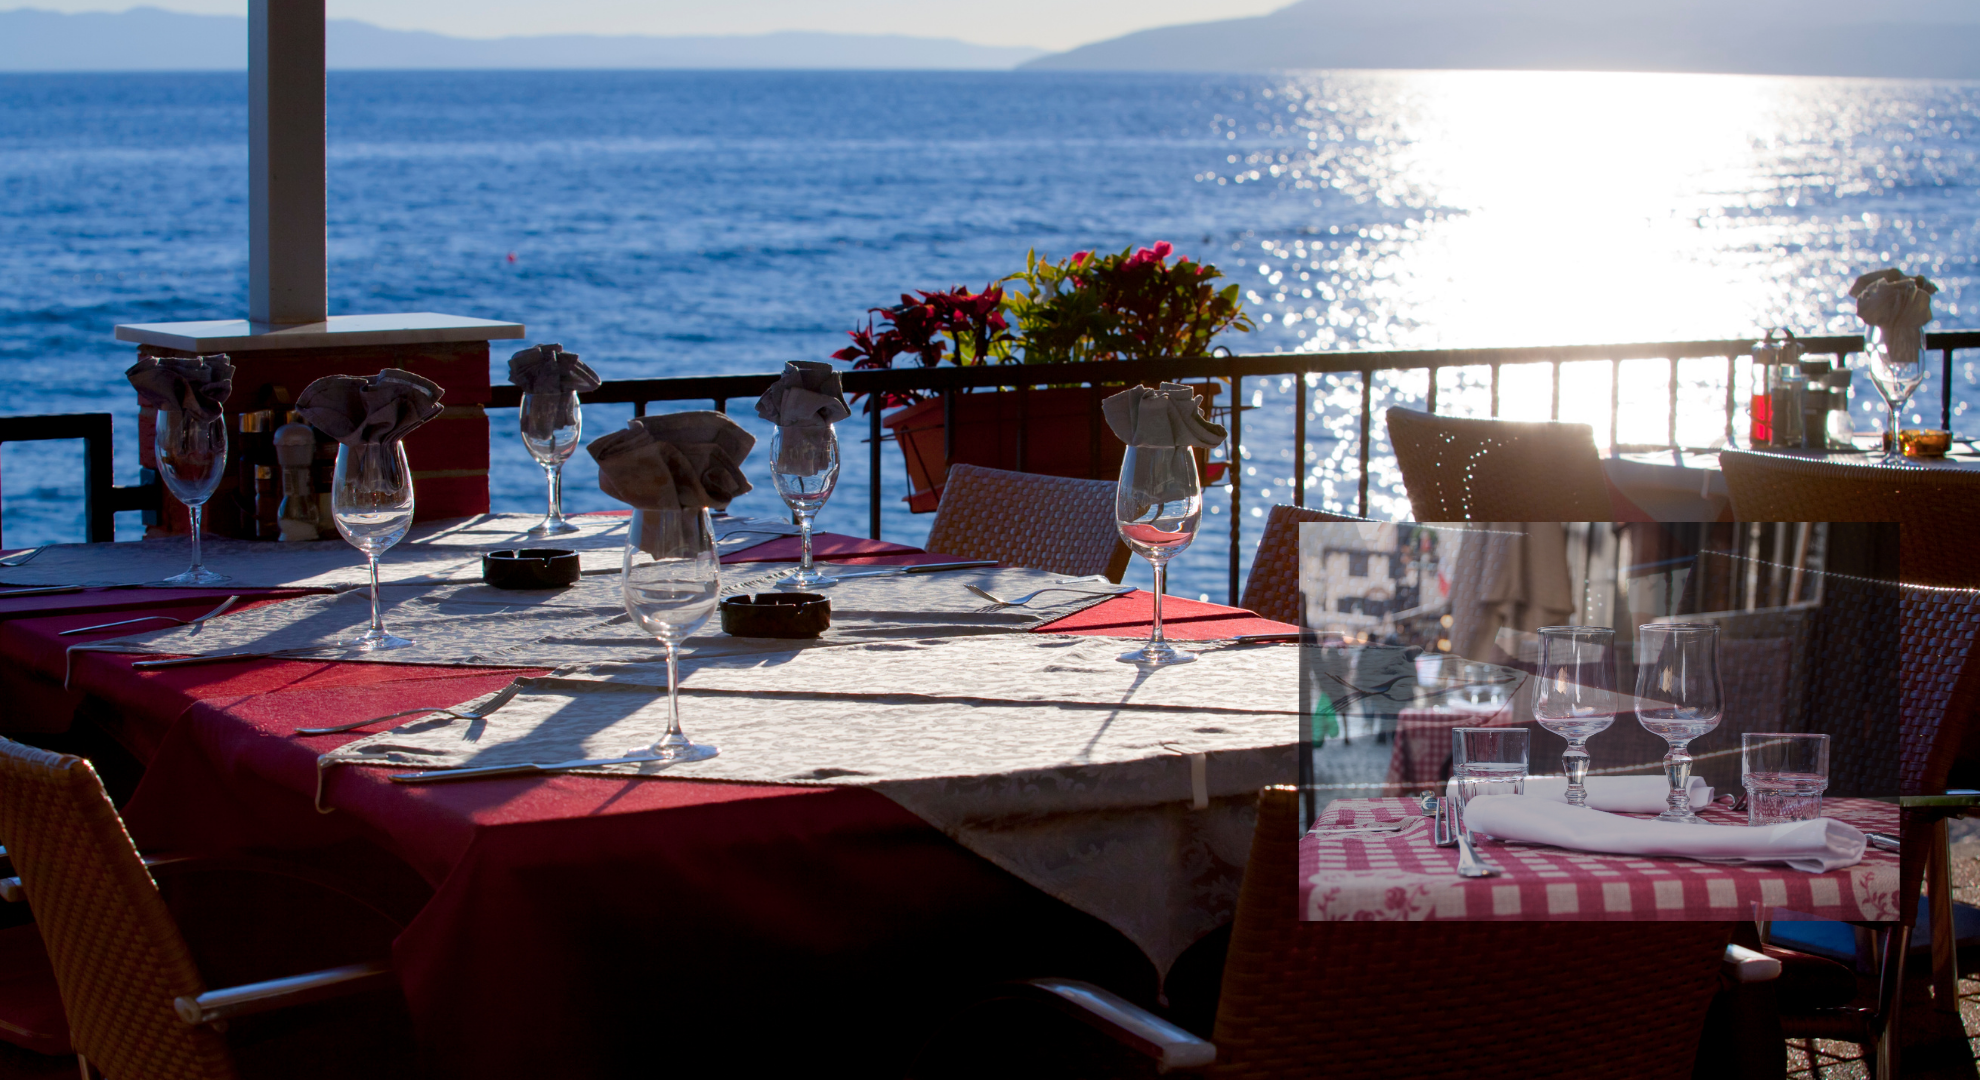 Begeistere deine Gäste immer wieder neu! Mit einfachen Tischdeko Ideen zauberst du regelmäßig ein neues Ambiente in deinem Restaurant